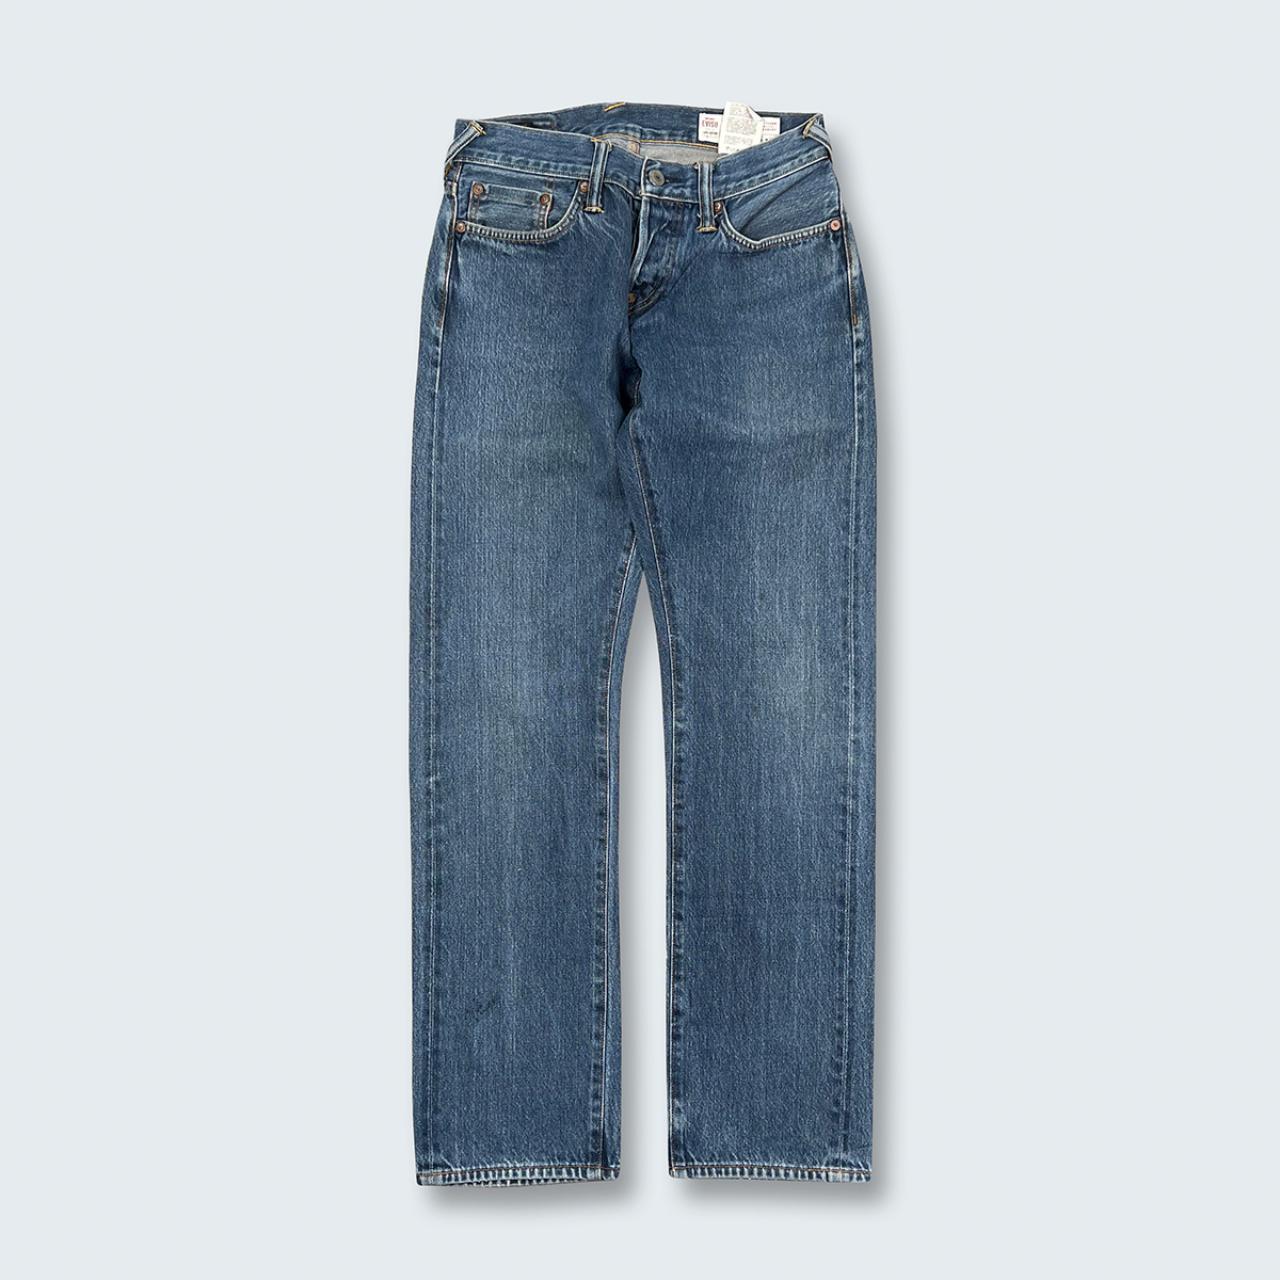 Authentic Vintage Evisu Jeans  (27")